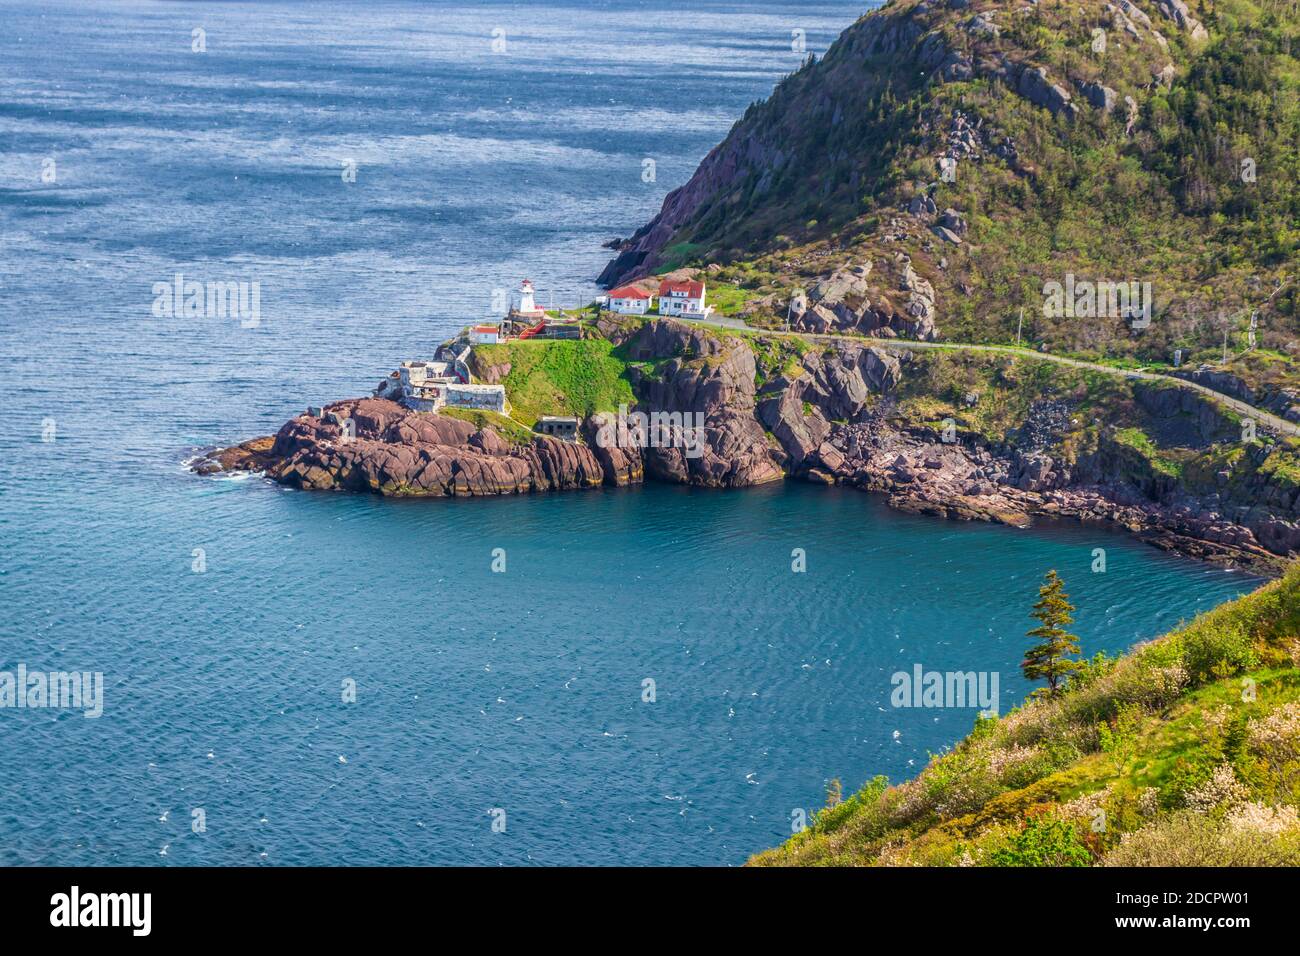 Leuchtturm, der die Schiffe in die Bucht führt - St. Johns, Neufundland, Kanada. Szenen aus St. johns, Neufundland Stockfoto